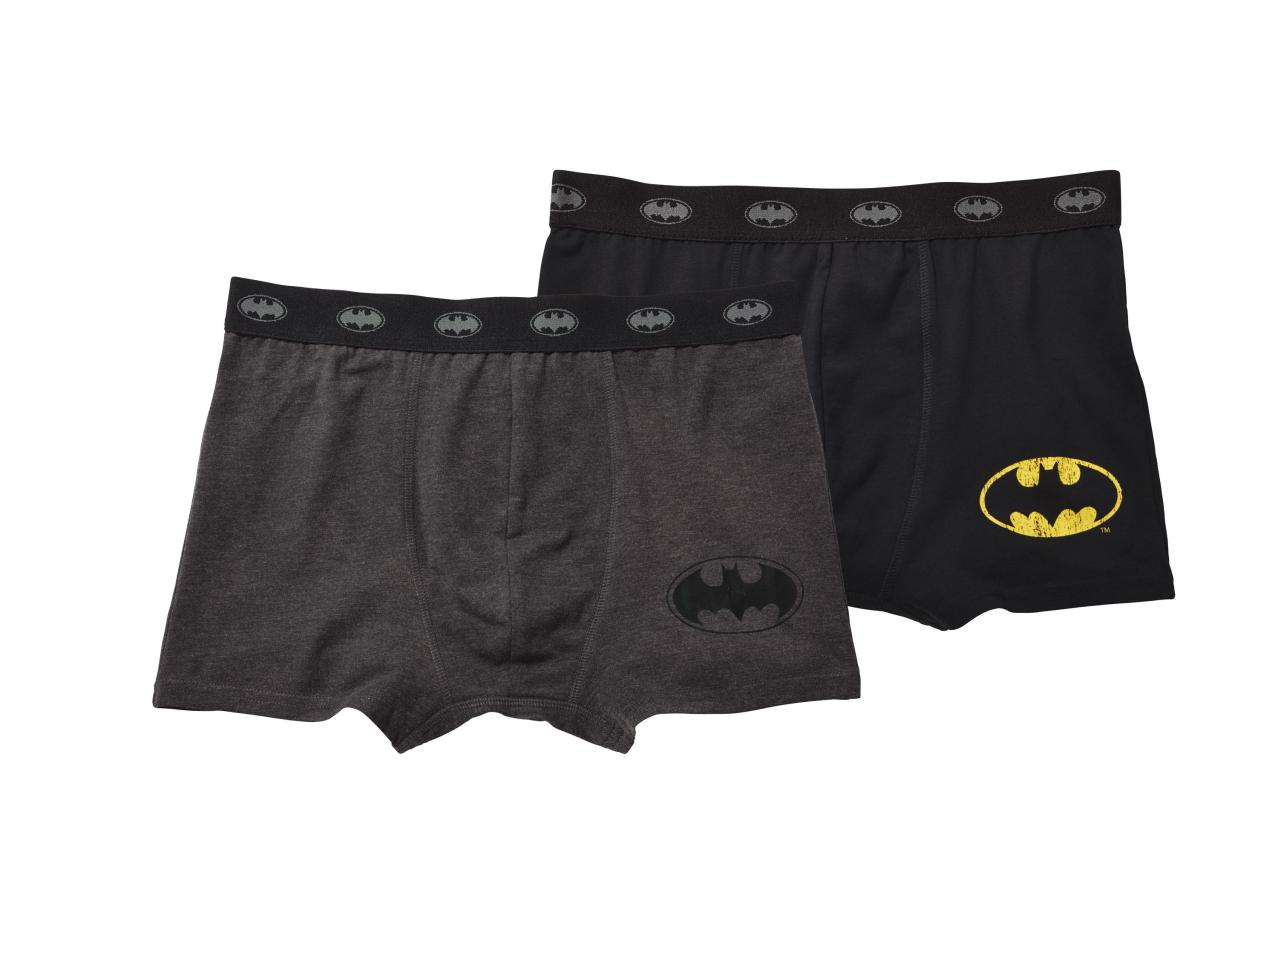 Men's Boxer Briefs "Batman, Superman"